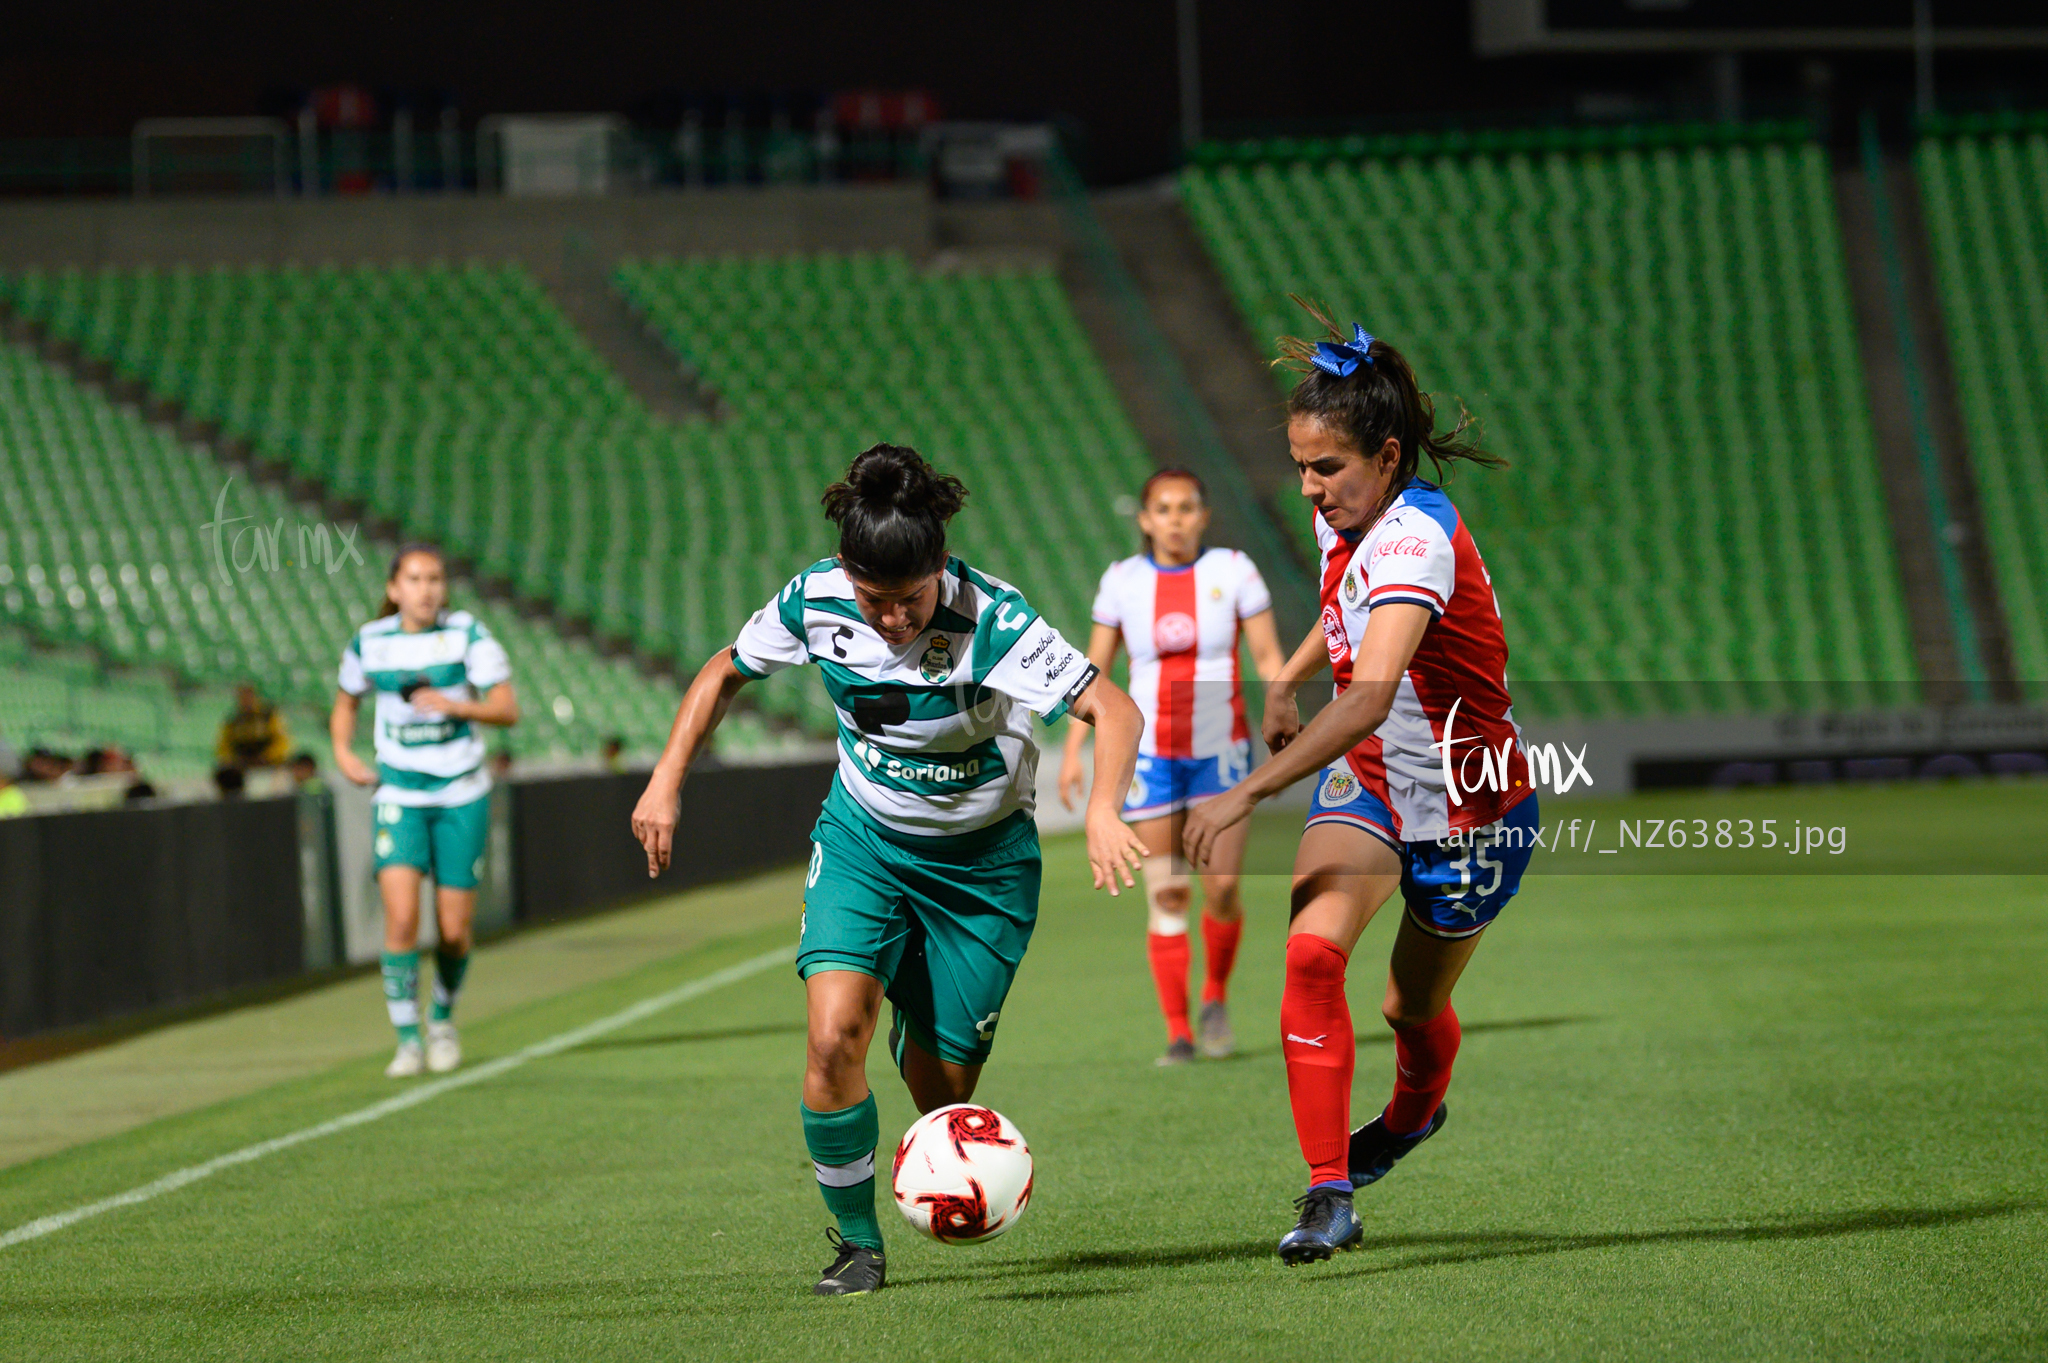 Fotos del Santos vs Chivas femenil J06C2020